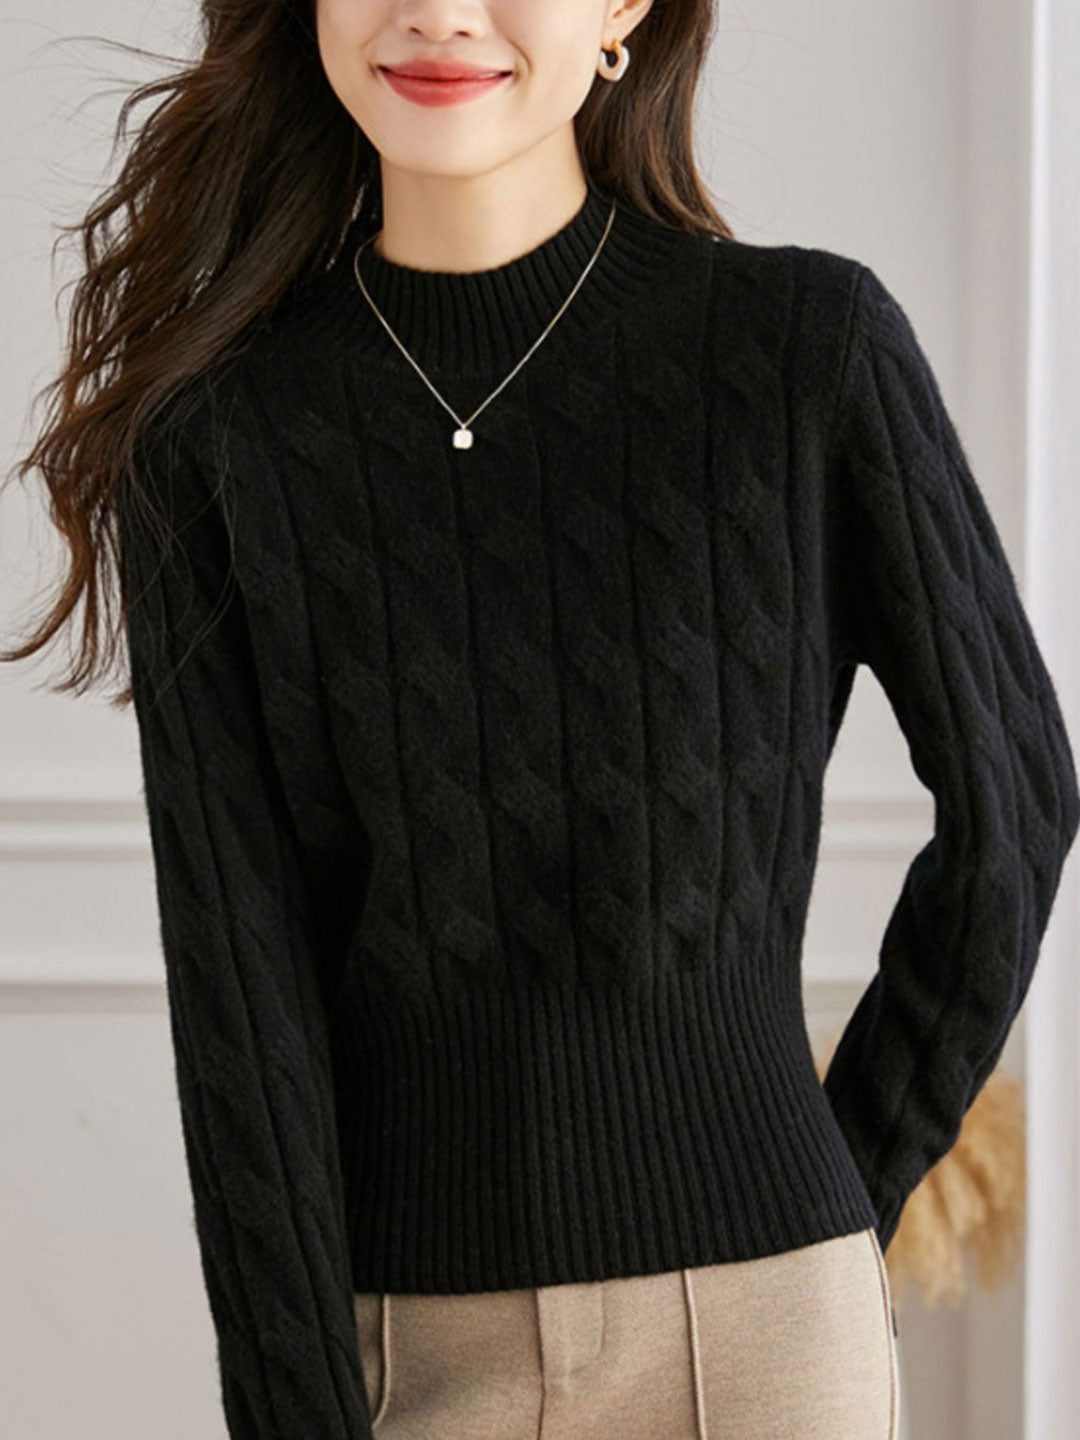 Lauren Elegant Crew Neck Turtleneck Knitted Sweater